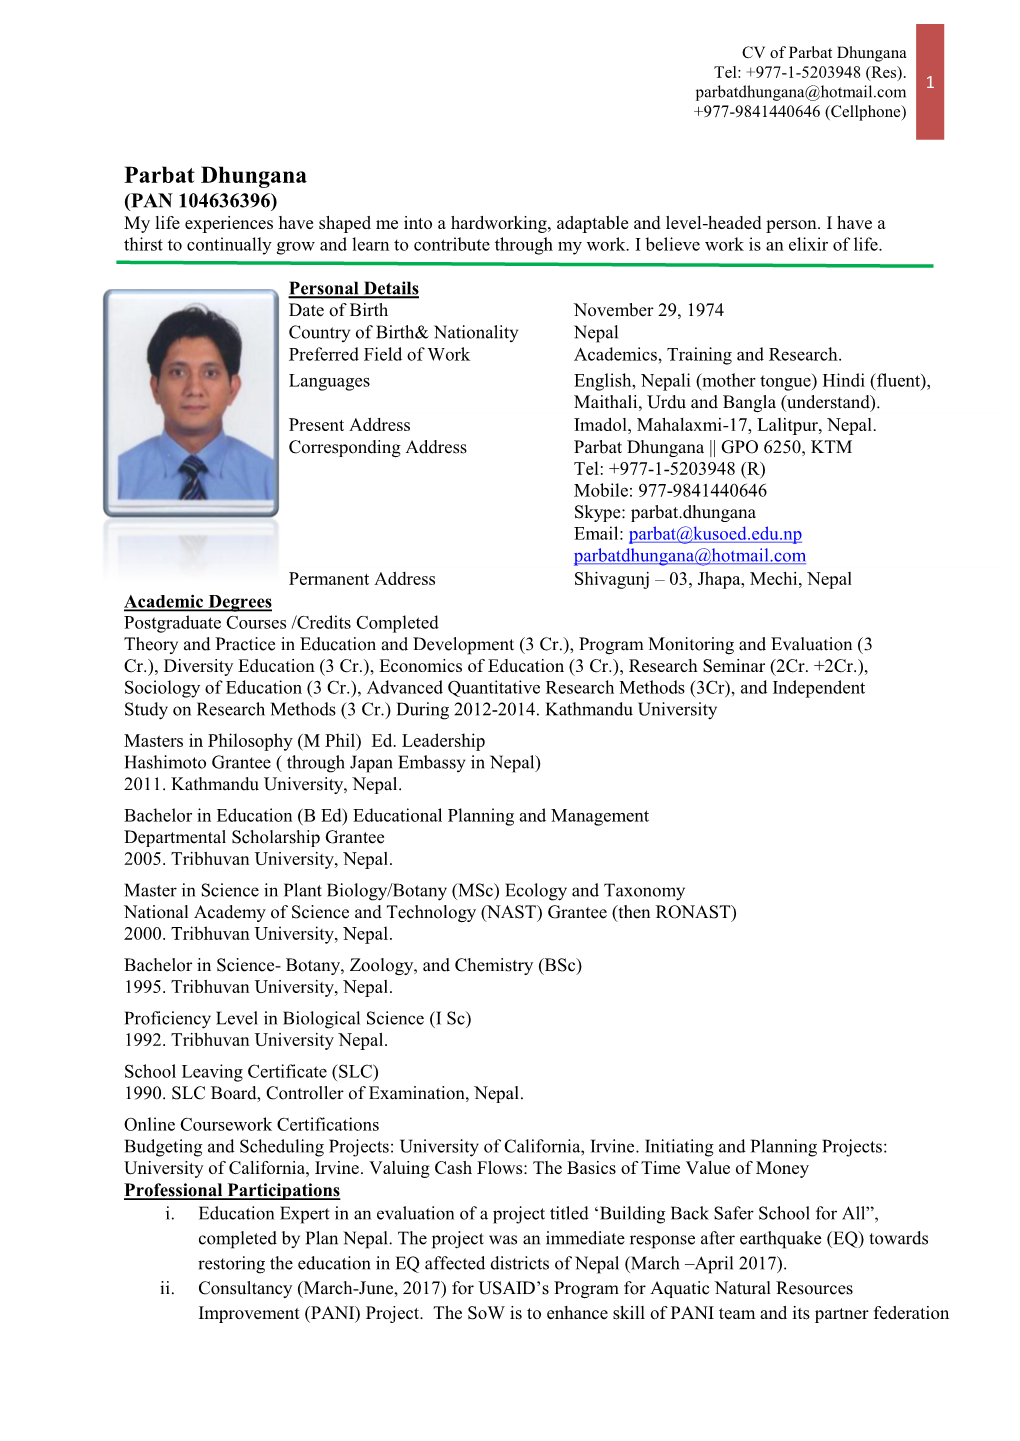 Application Along with CV Parbat Dhungana Parbatdhungana